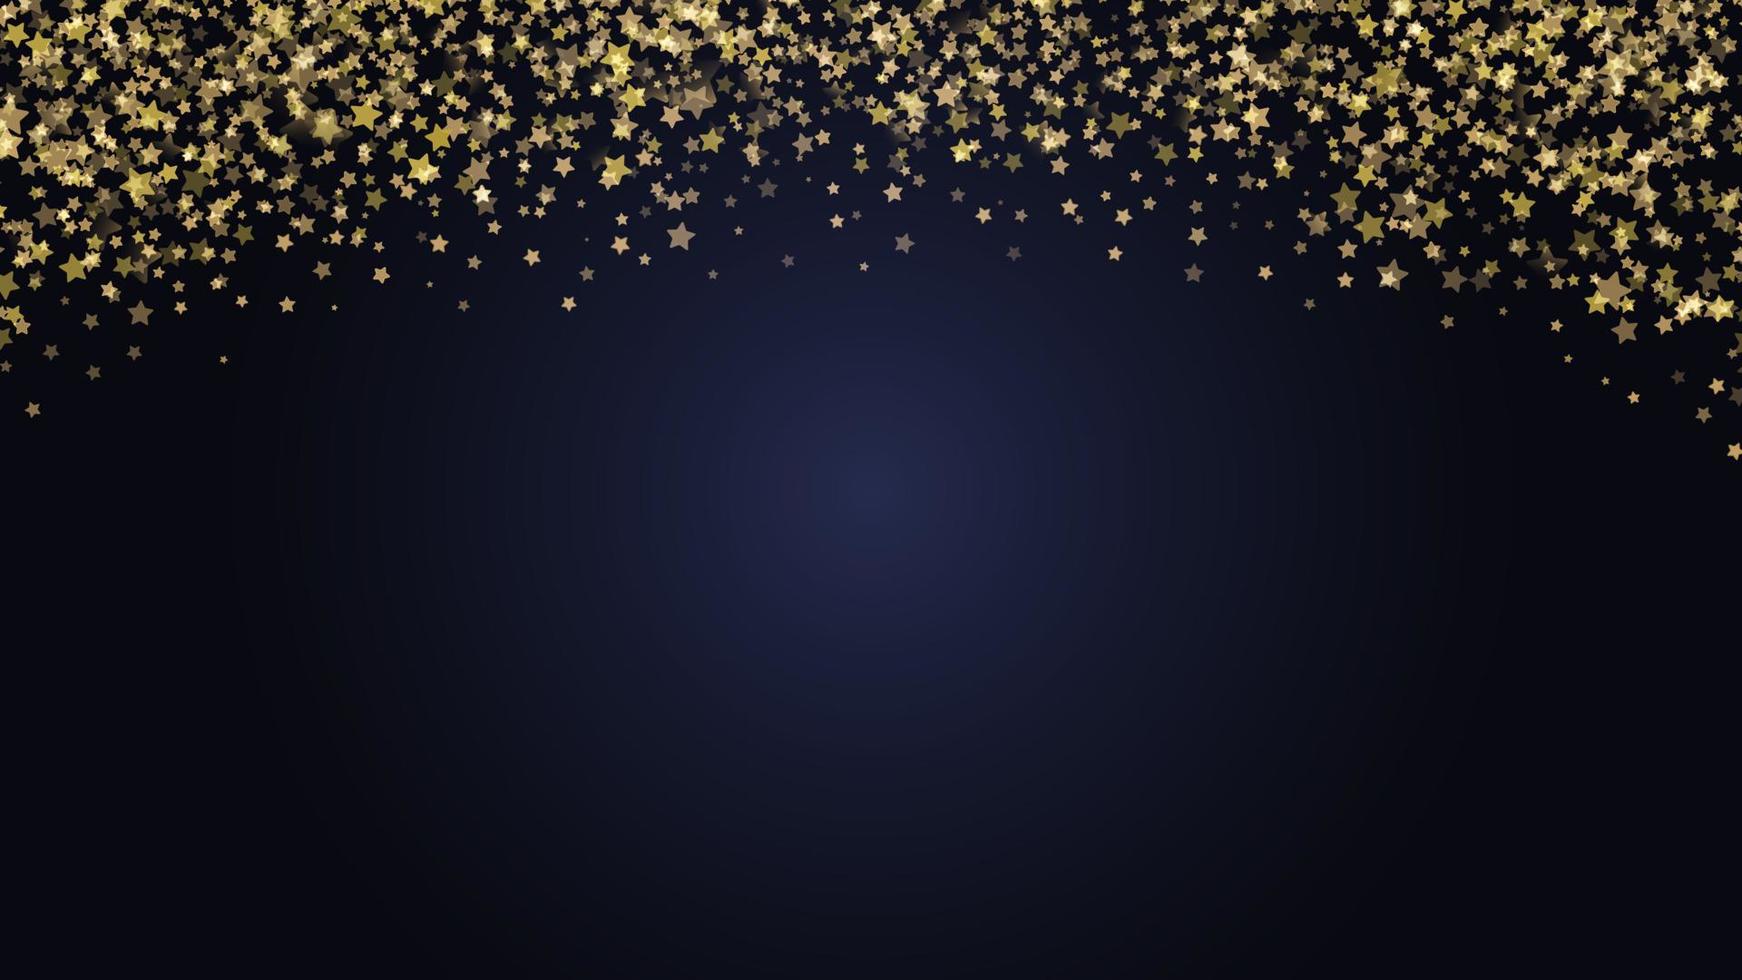 fond festif de noël et du nouvel an avec des paillettes d'or d'étoiles. illustration vectorielle. vecteur